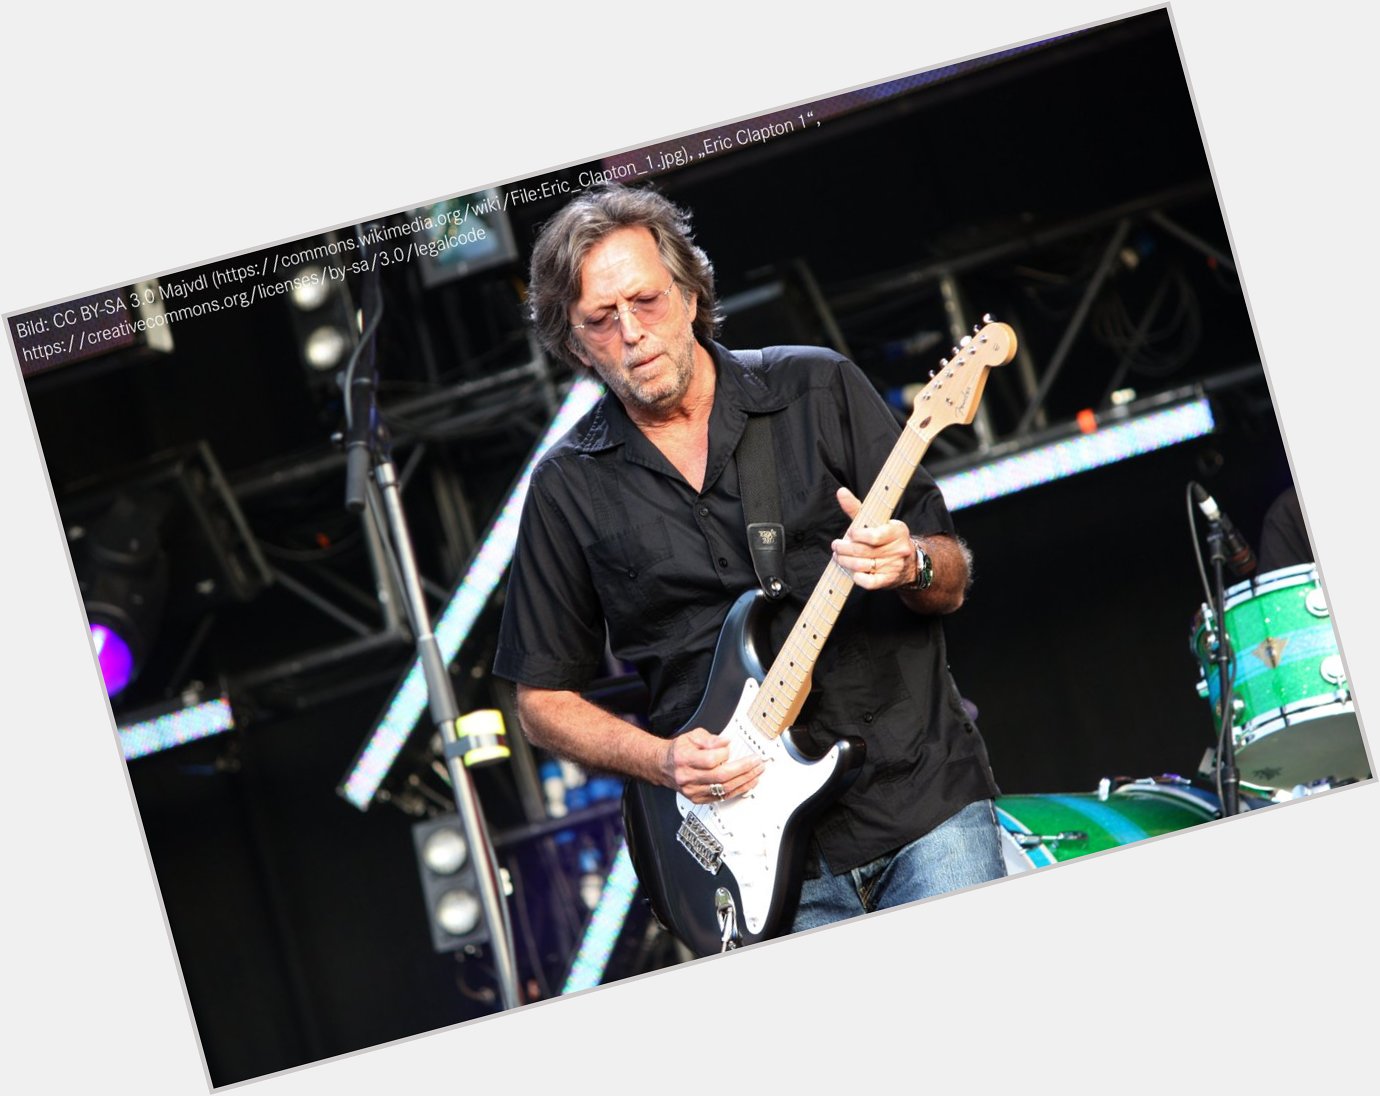 Eric Clapton wird heute 76! Happy Birthday! Er ist einer meiner Helden. Schon oft live gesehen. Keep on rockin! 